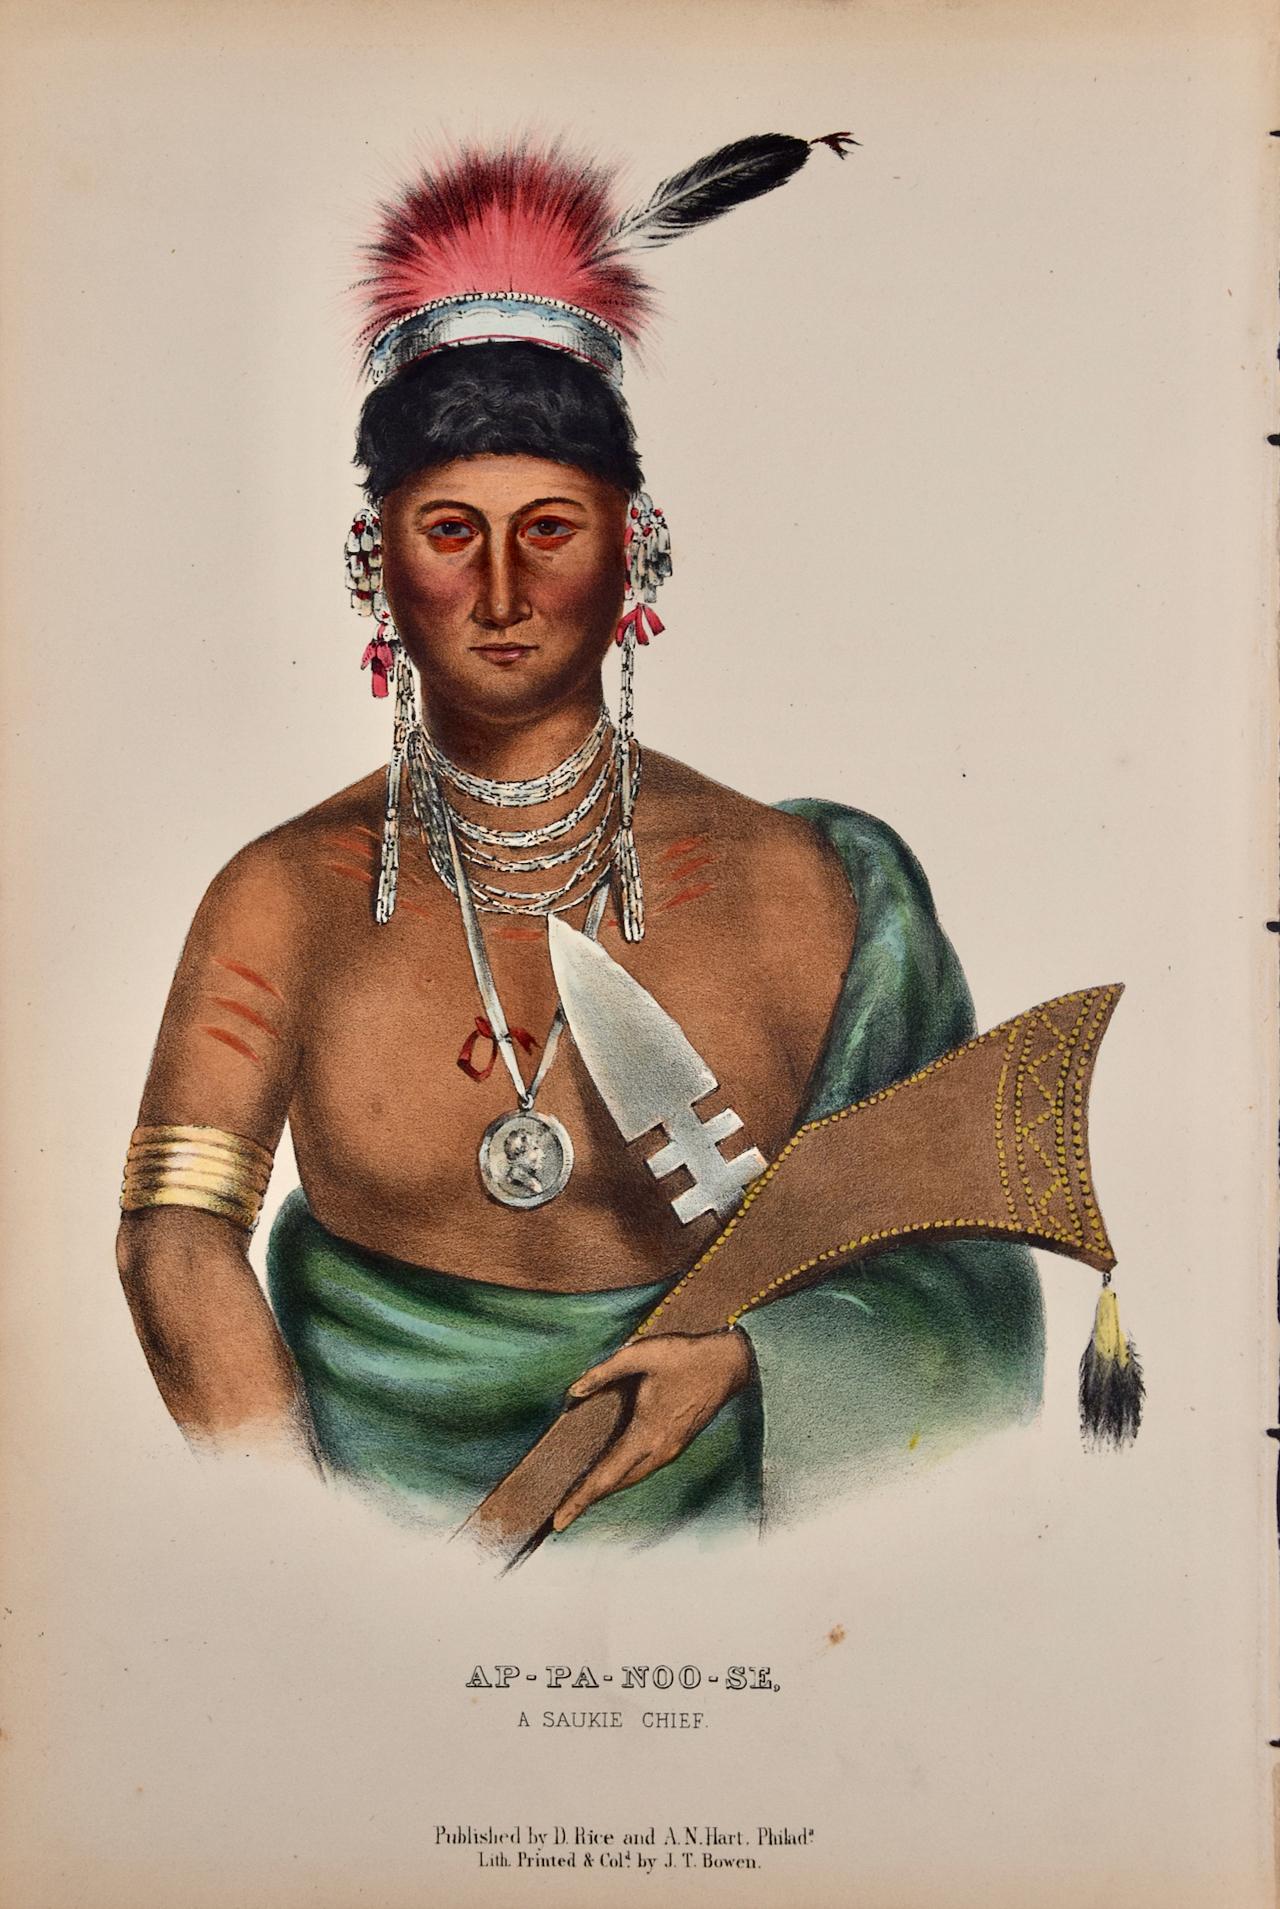 Ap-Pa-Noo-Se, A Saukie Chief: Original Hand-colored McKenney & Hall Lithograph